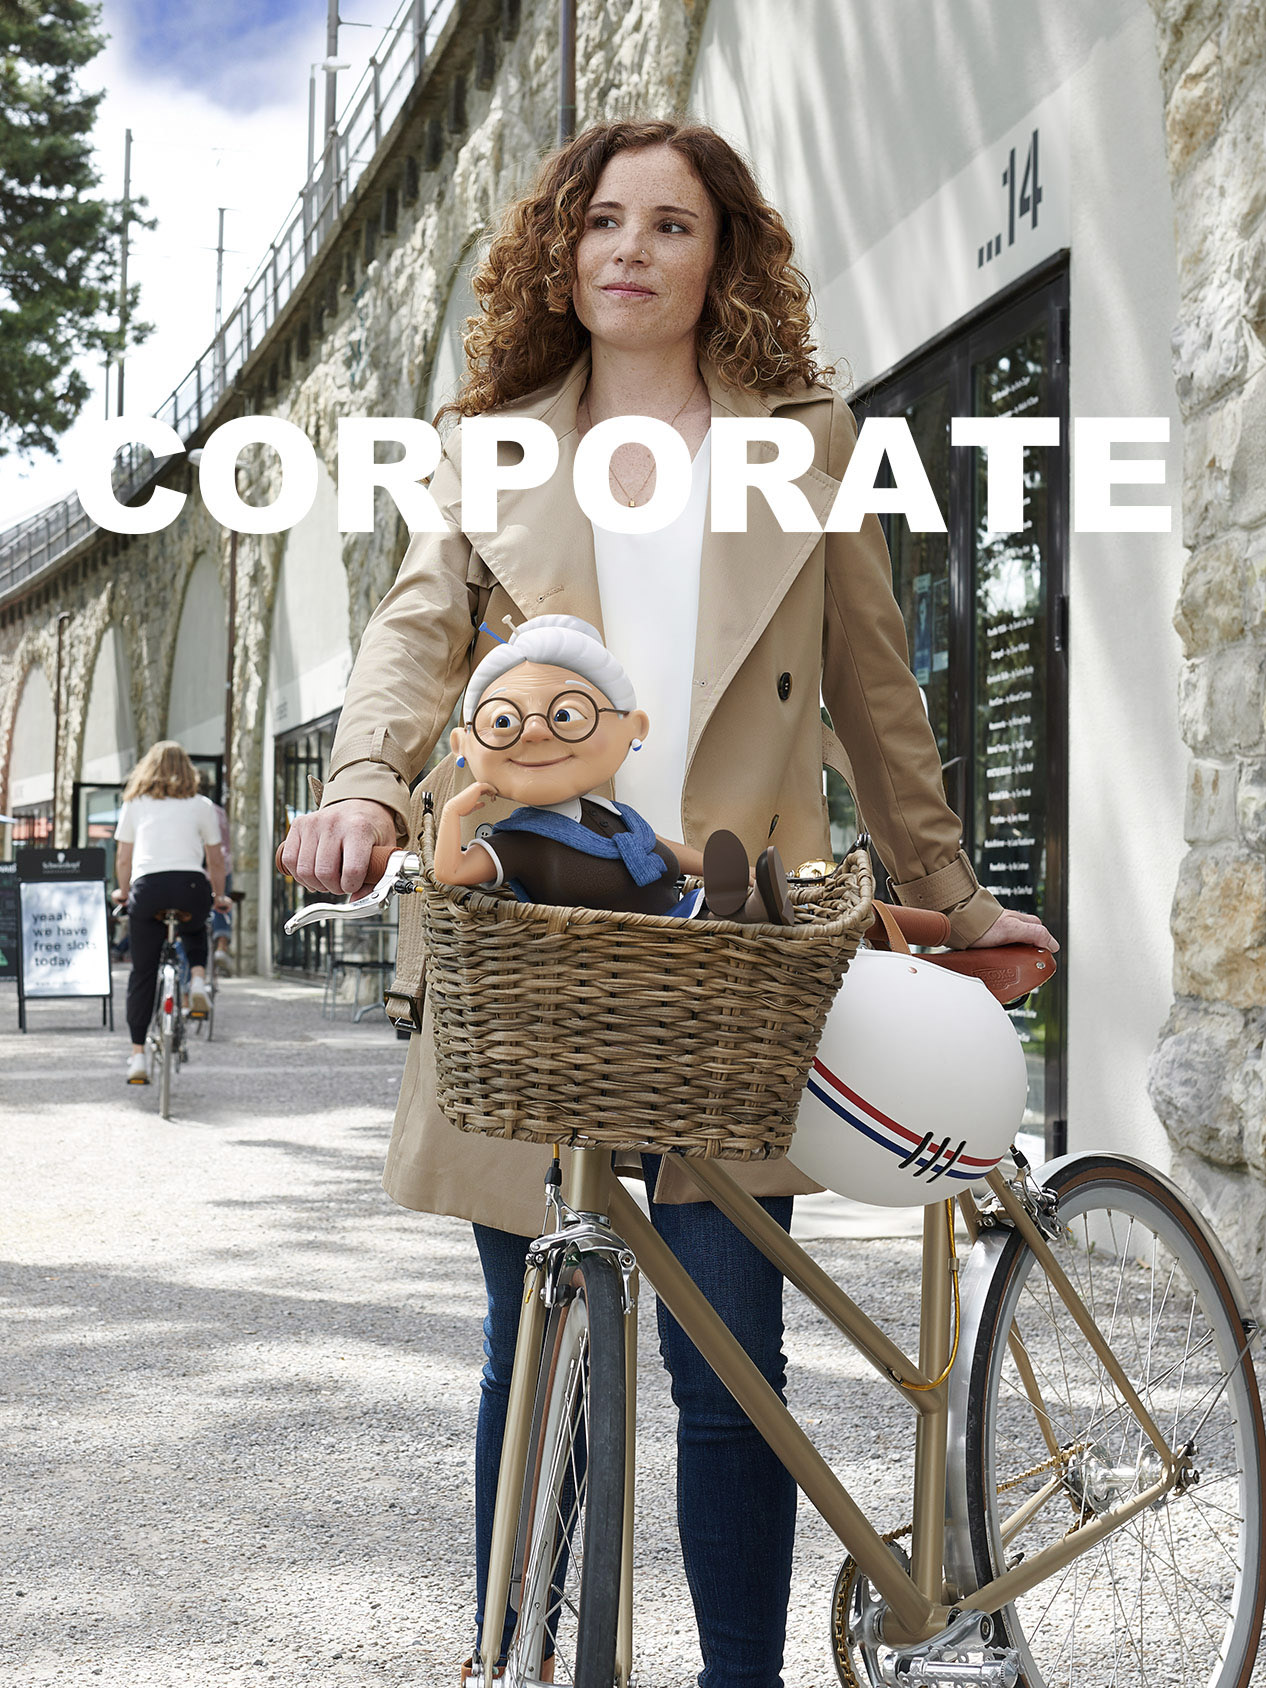 Titelbild Corporate Mobile, Werbefotografie, Frau mit Velo, Grossmutter im Velokorb, Zürich